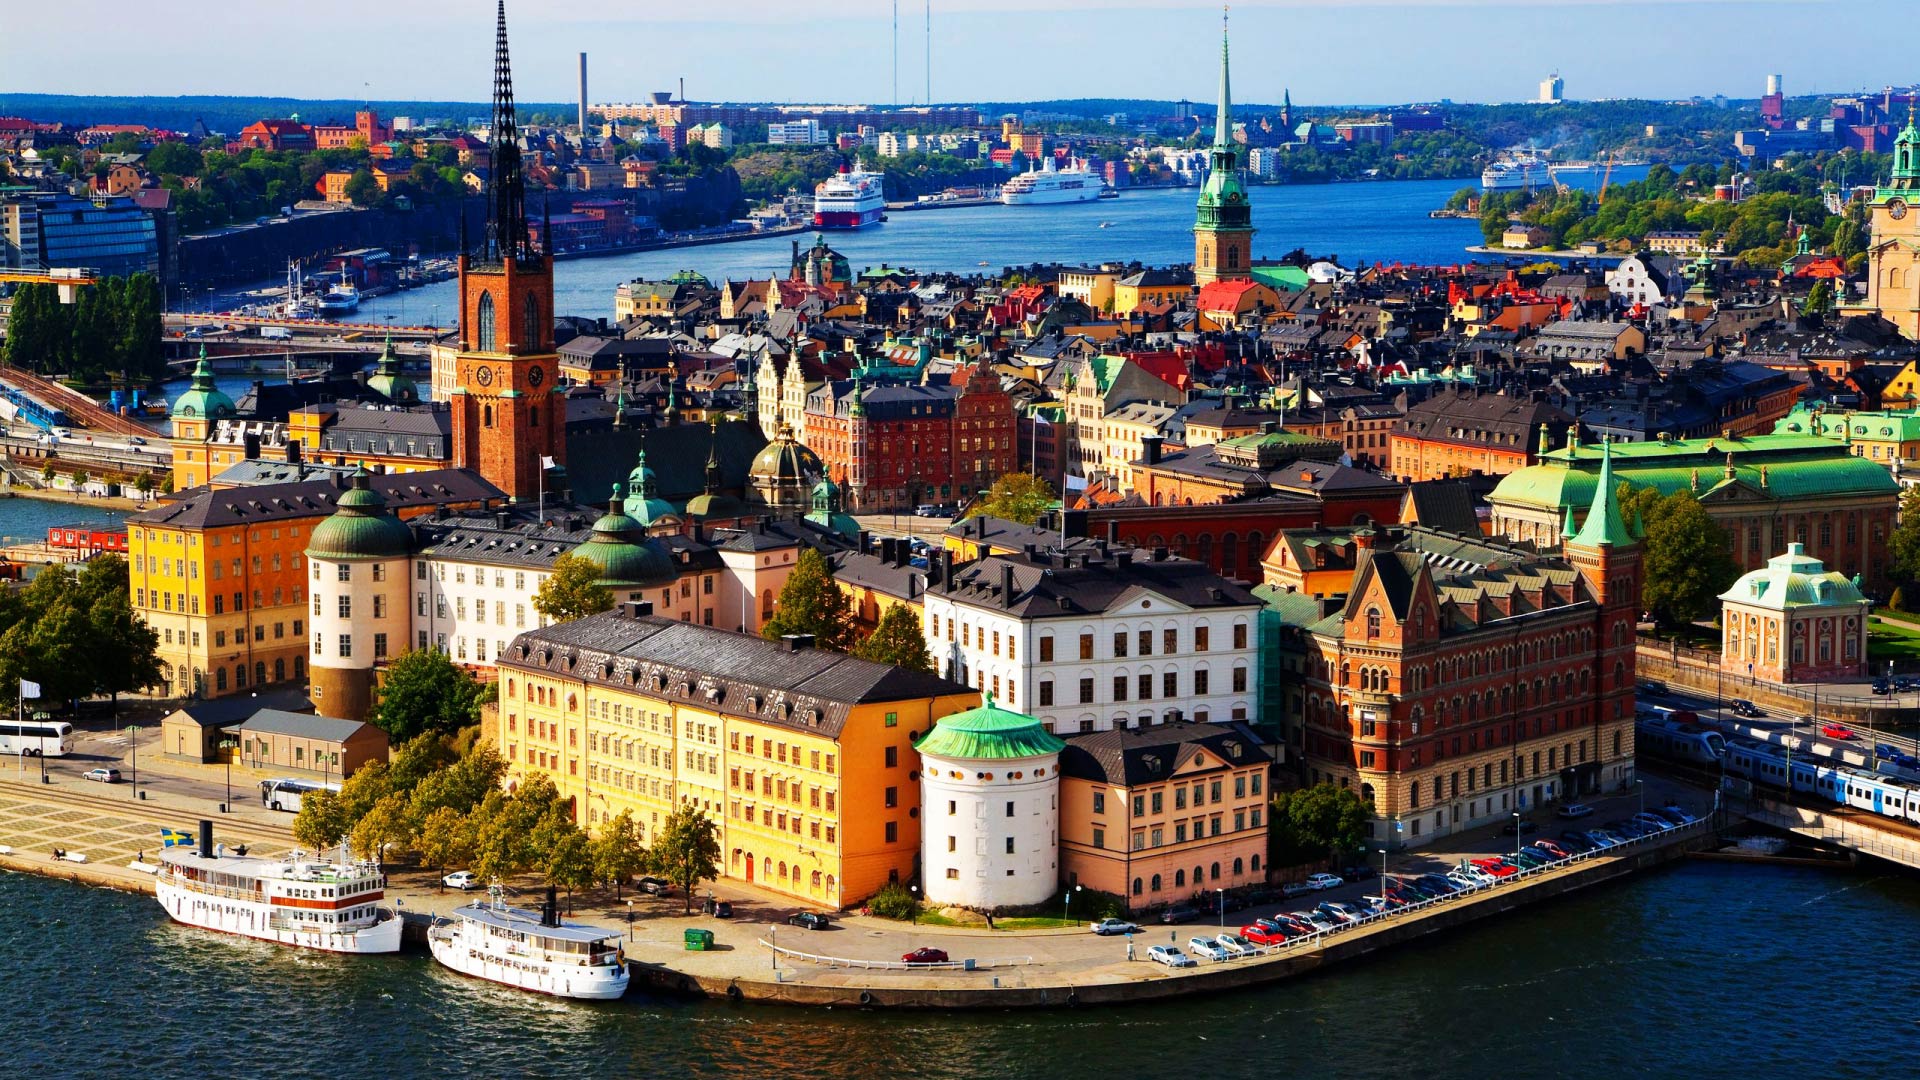 Выходные в Скандинавии  1 ночь в Хельсинки+ 1 ночь на пароме+ 2 ночи в Стокгольме  Вылет по четвергам.